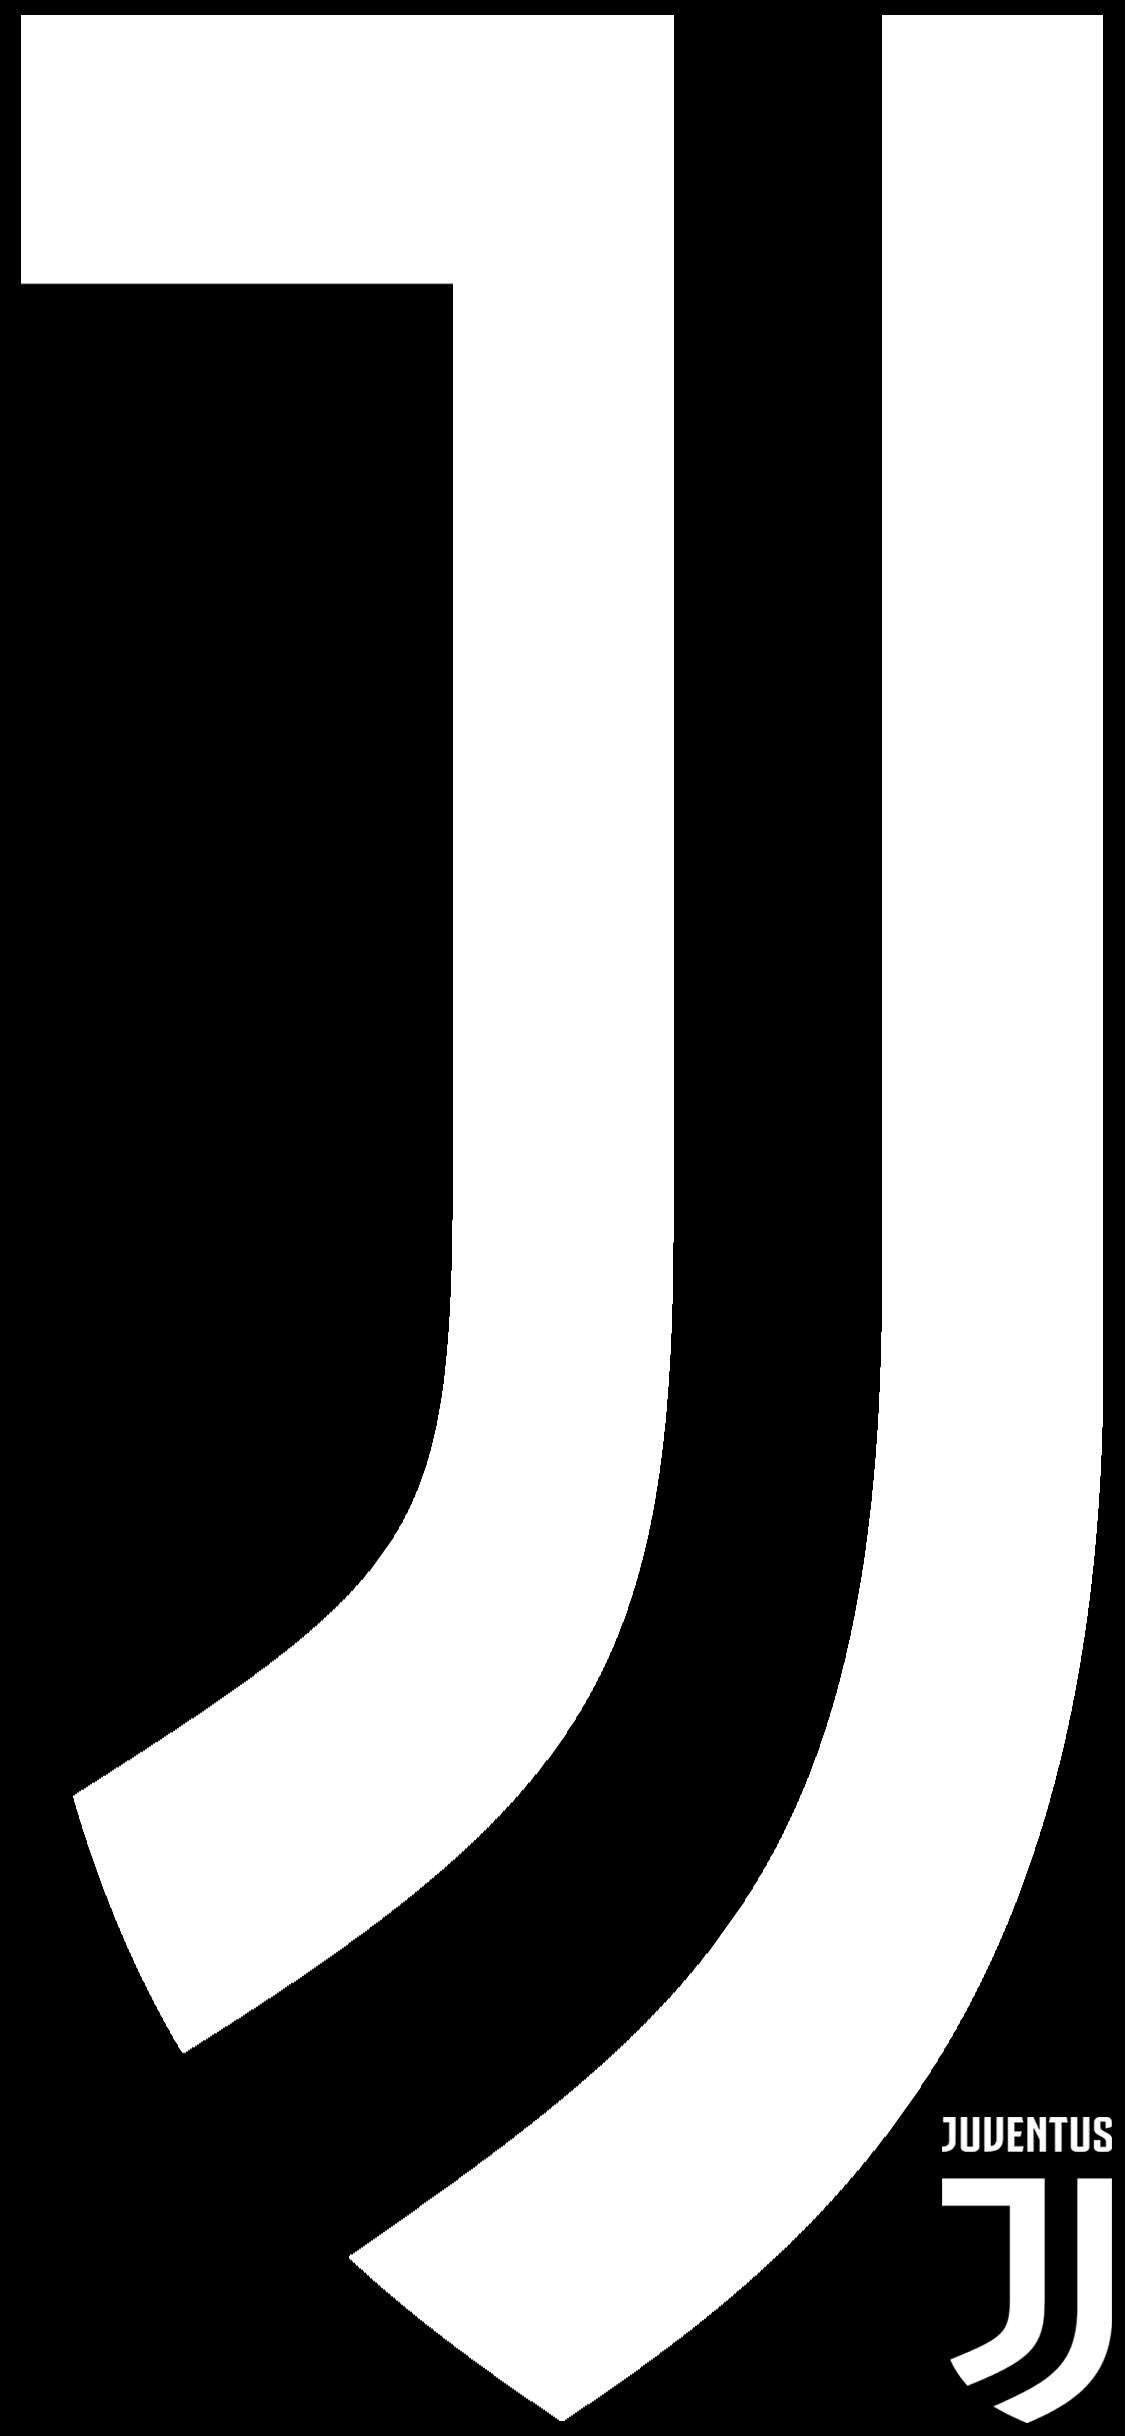 Juventus iPhone X Wallpaper #juventus #Juve #iphonexwallpaper